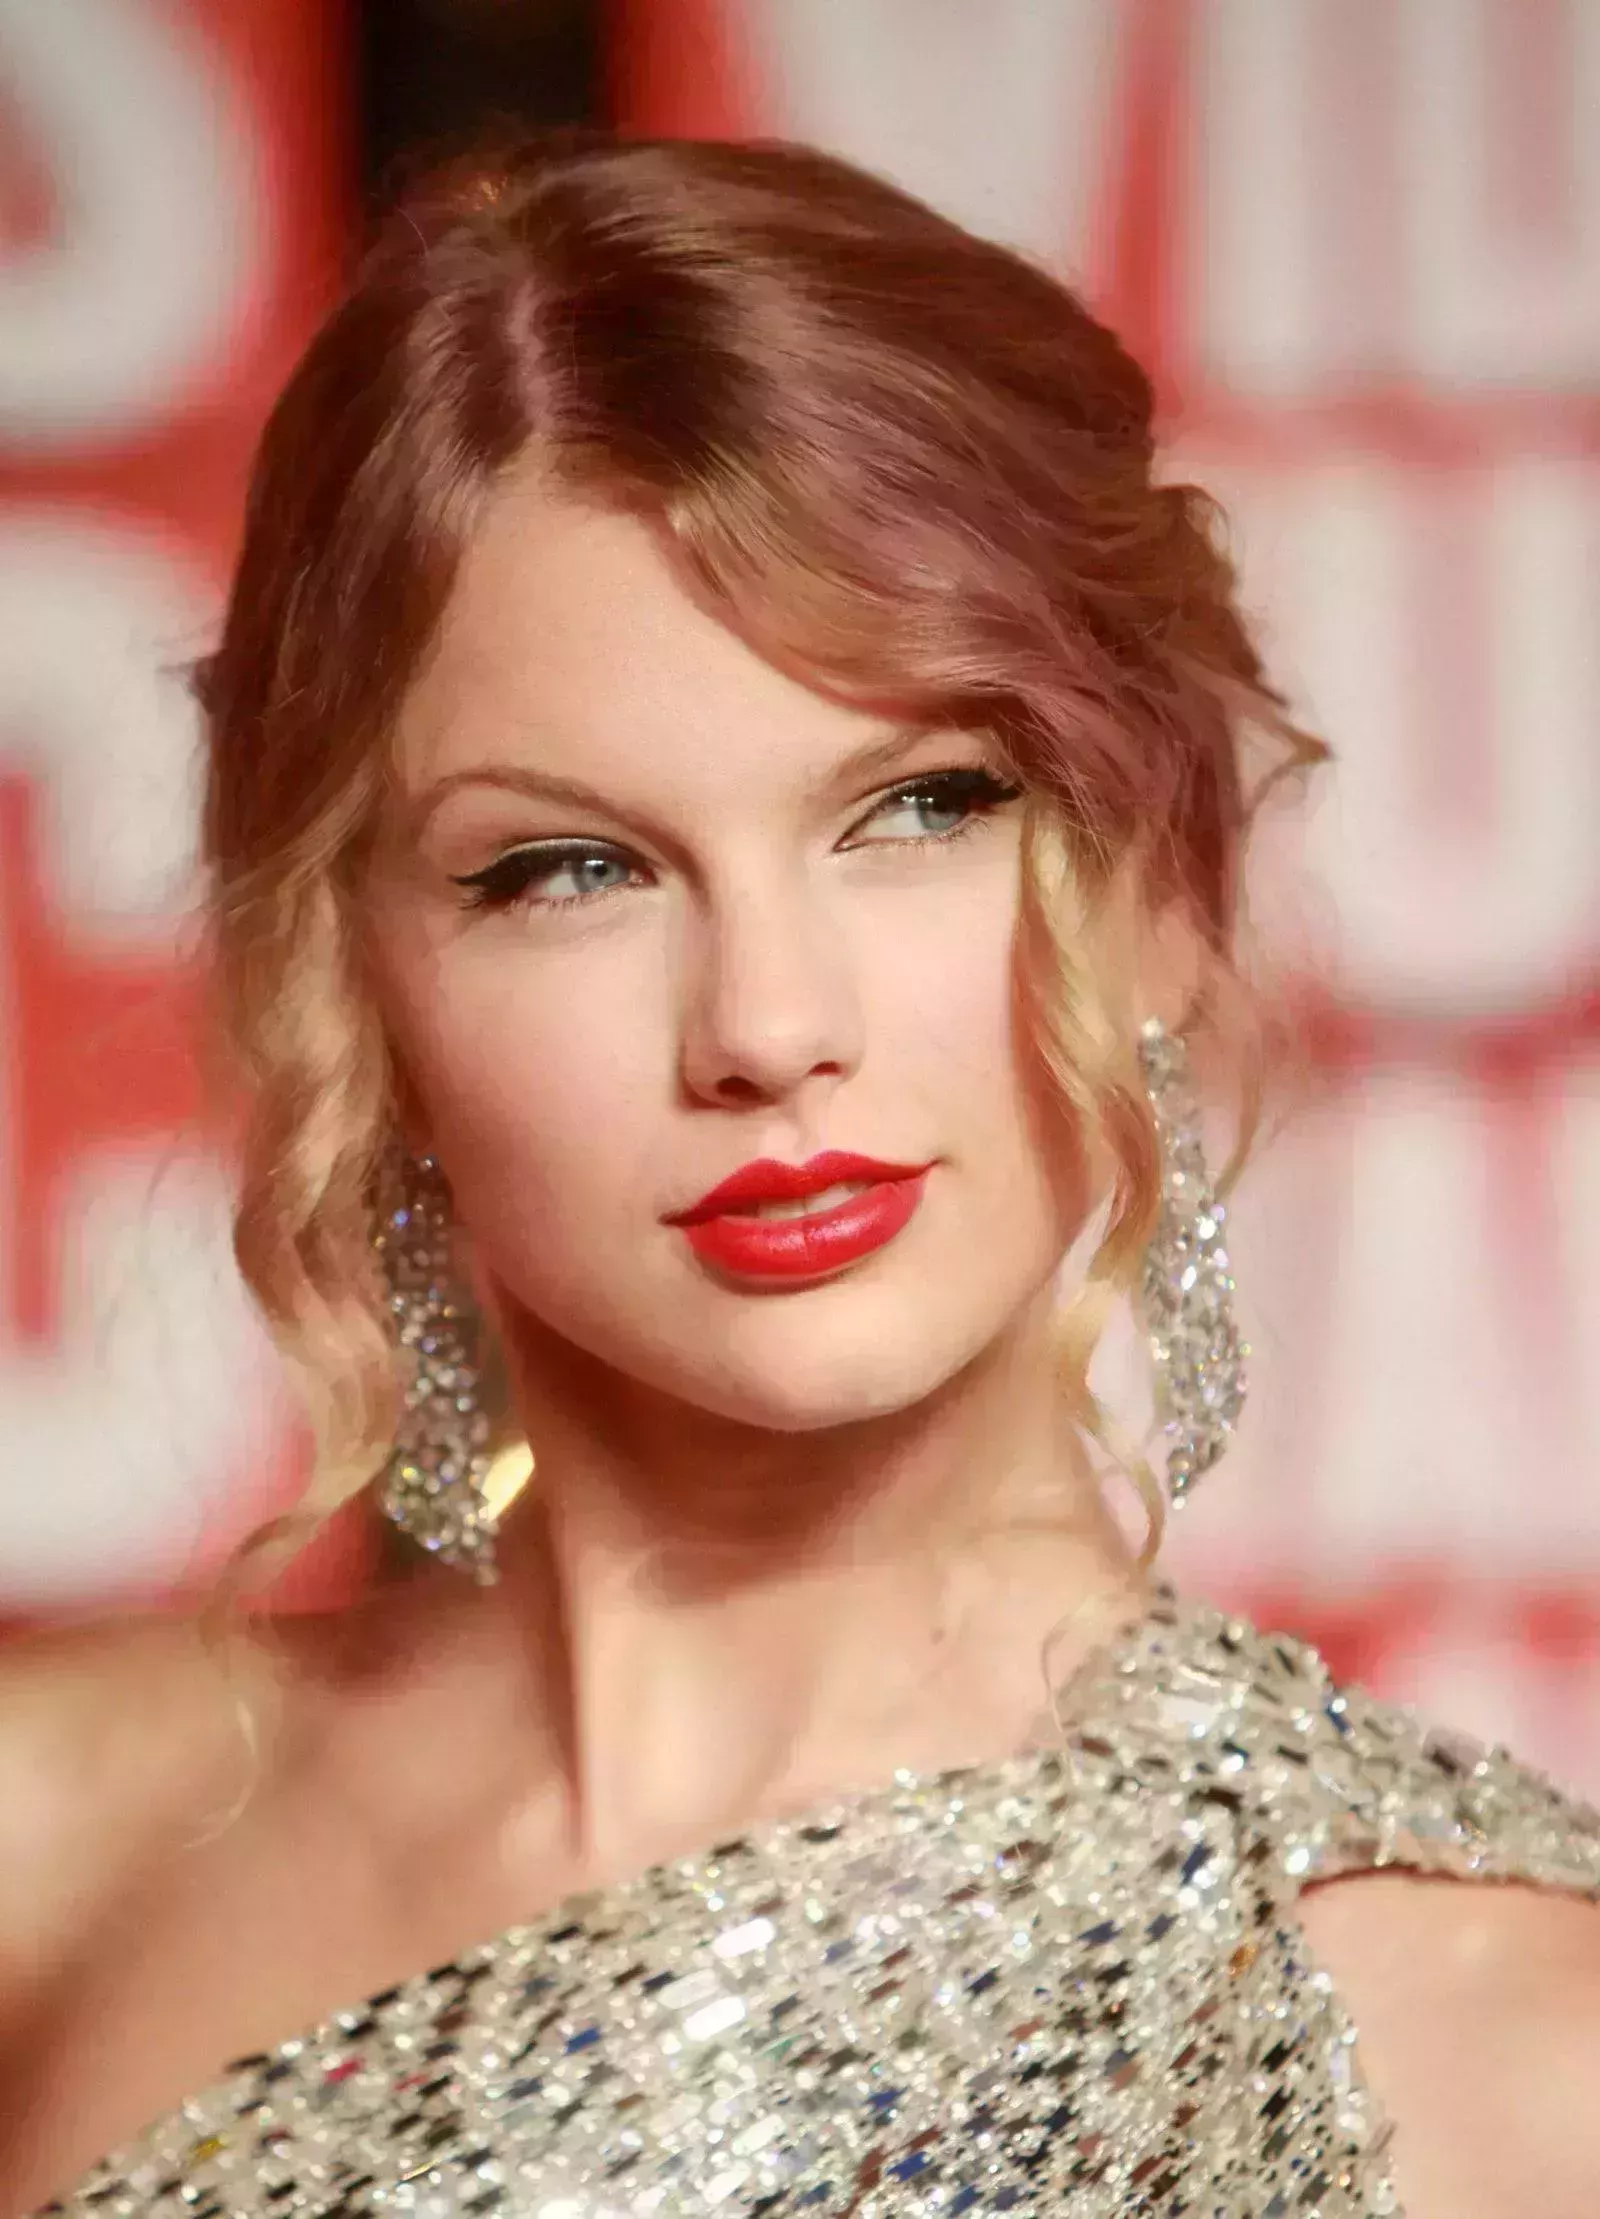 ¿Cuál es el pintalabios rojo de Taylor Swift?